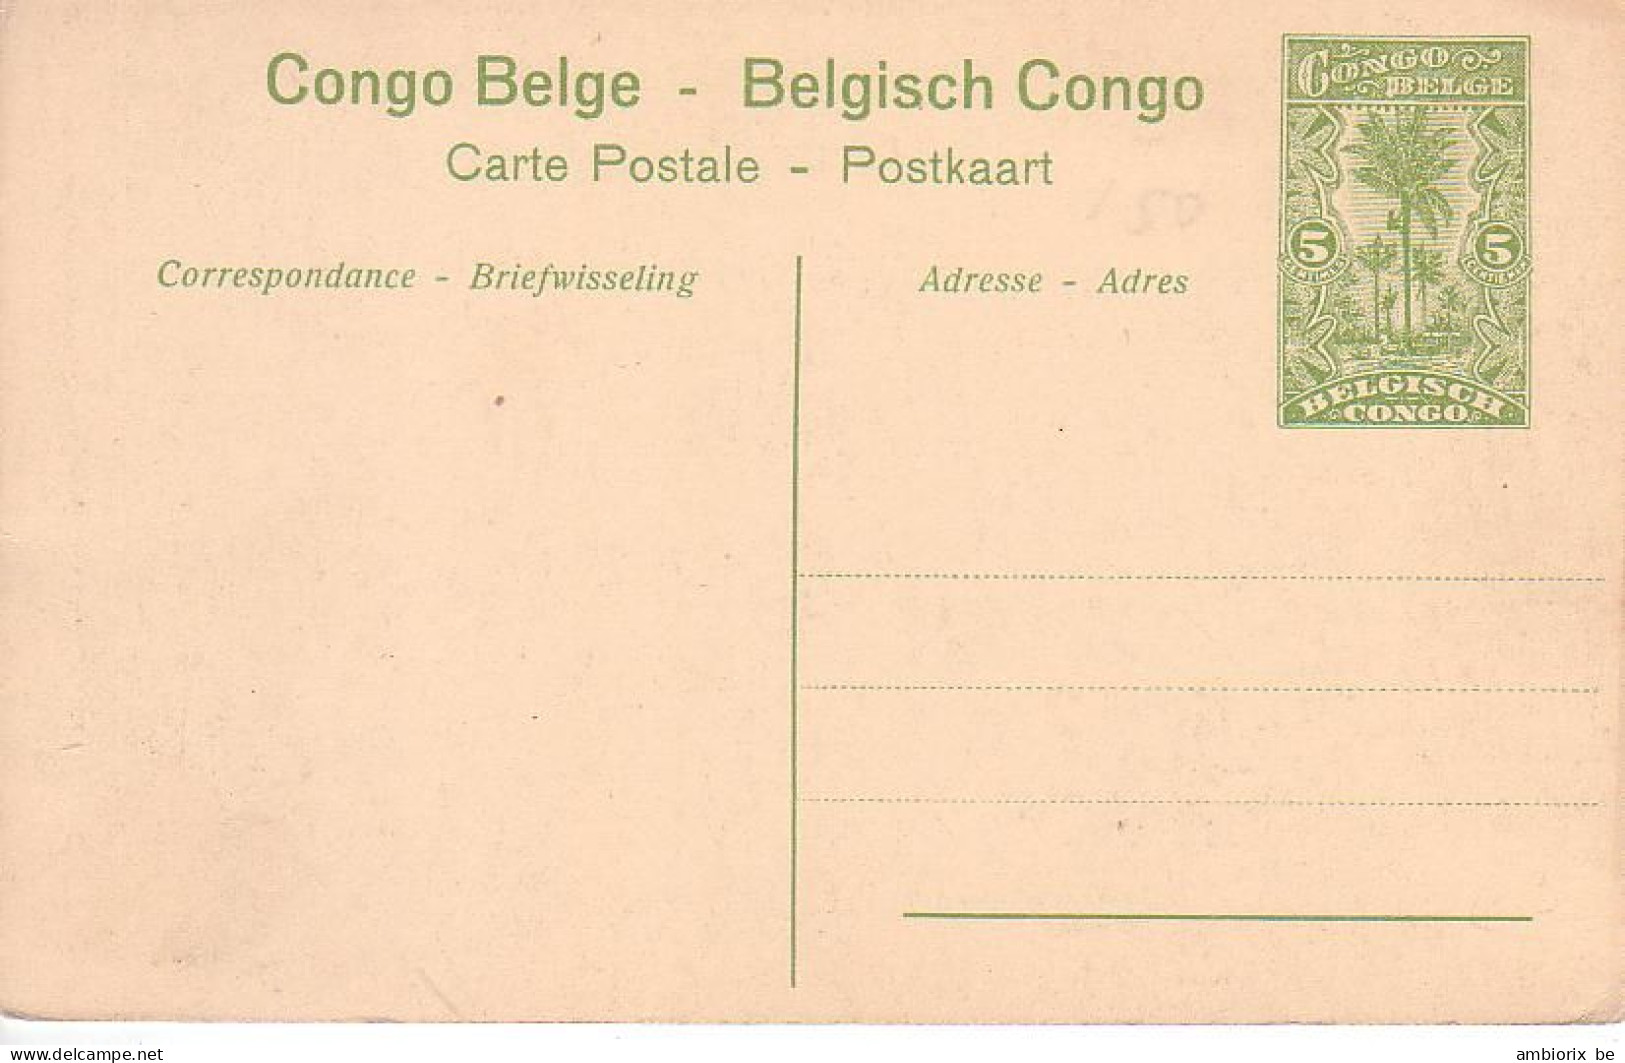 Etier Postal Congo Neuf N° 42 - 54 - Ponthierville - Intérieur De La Station - Interi Postali